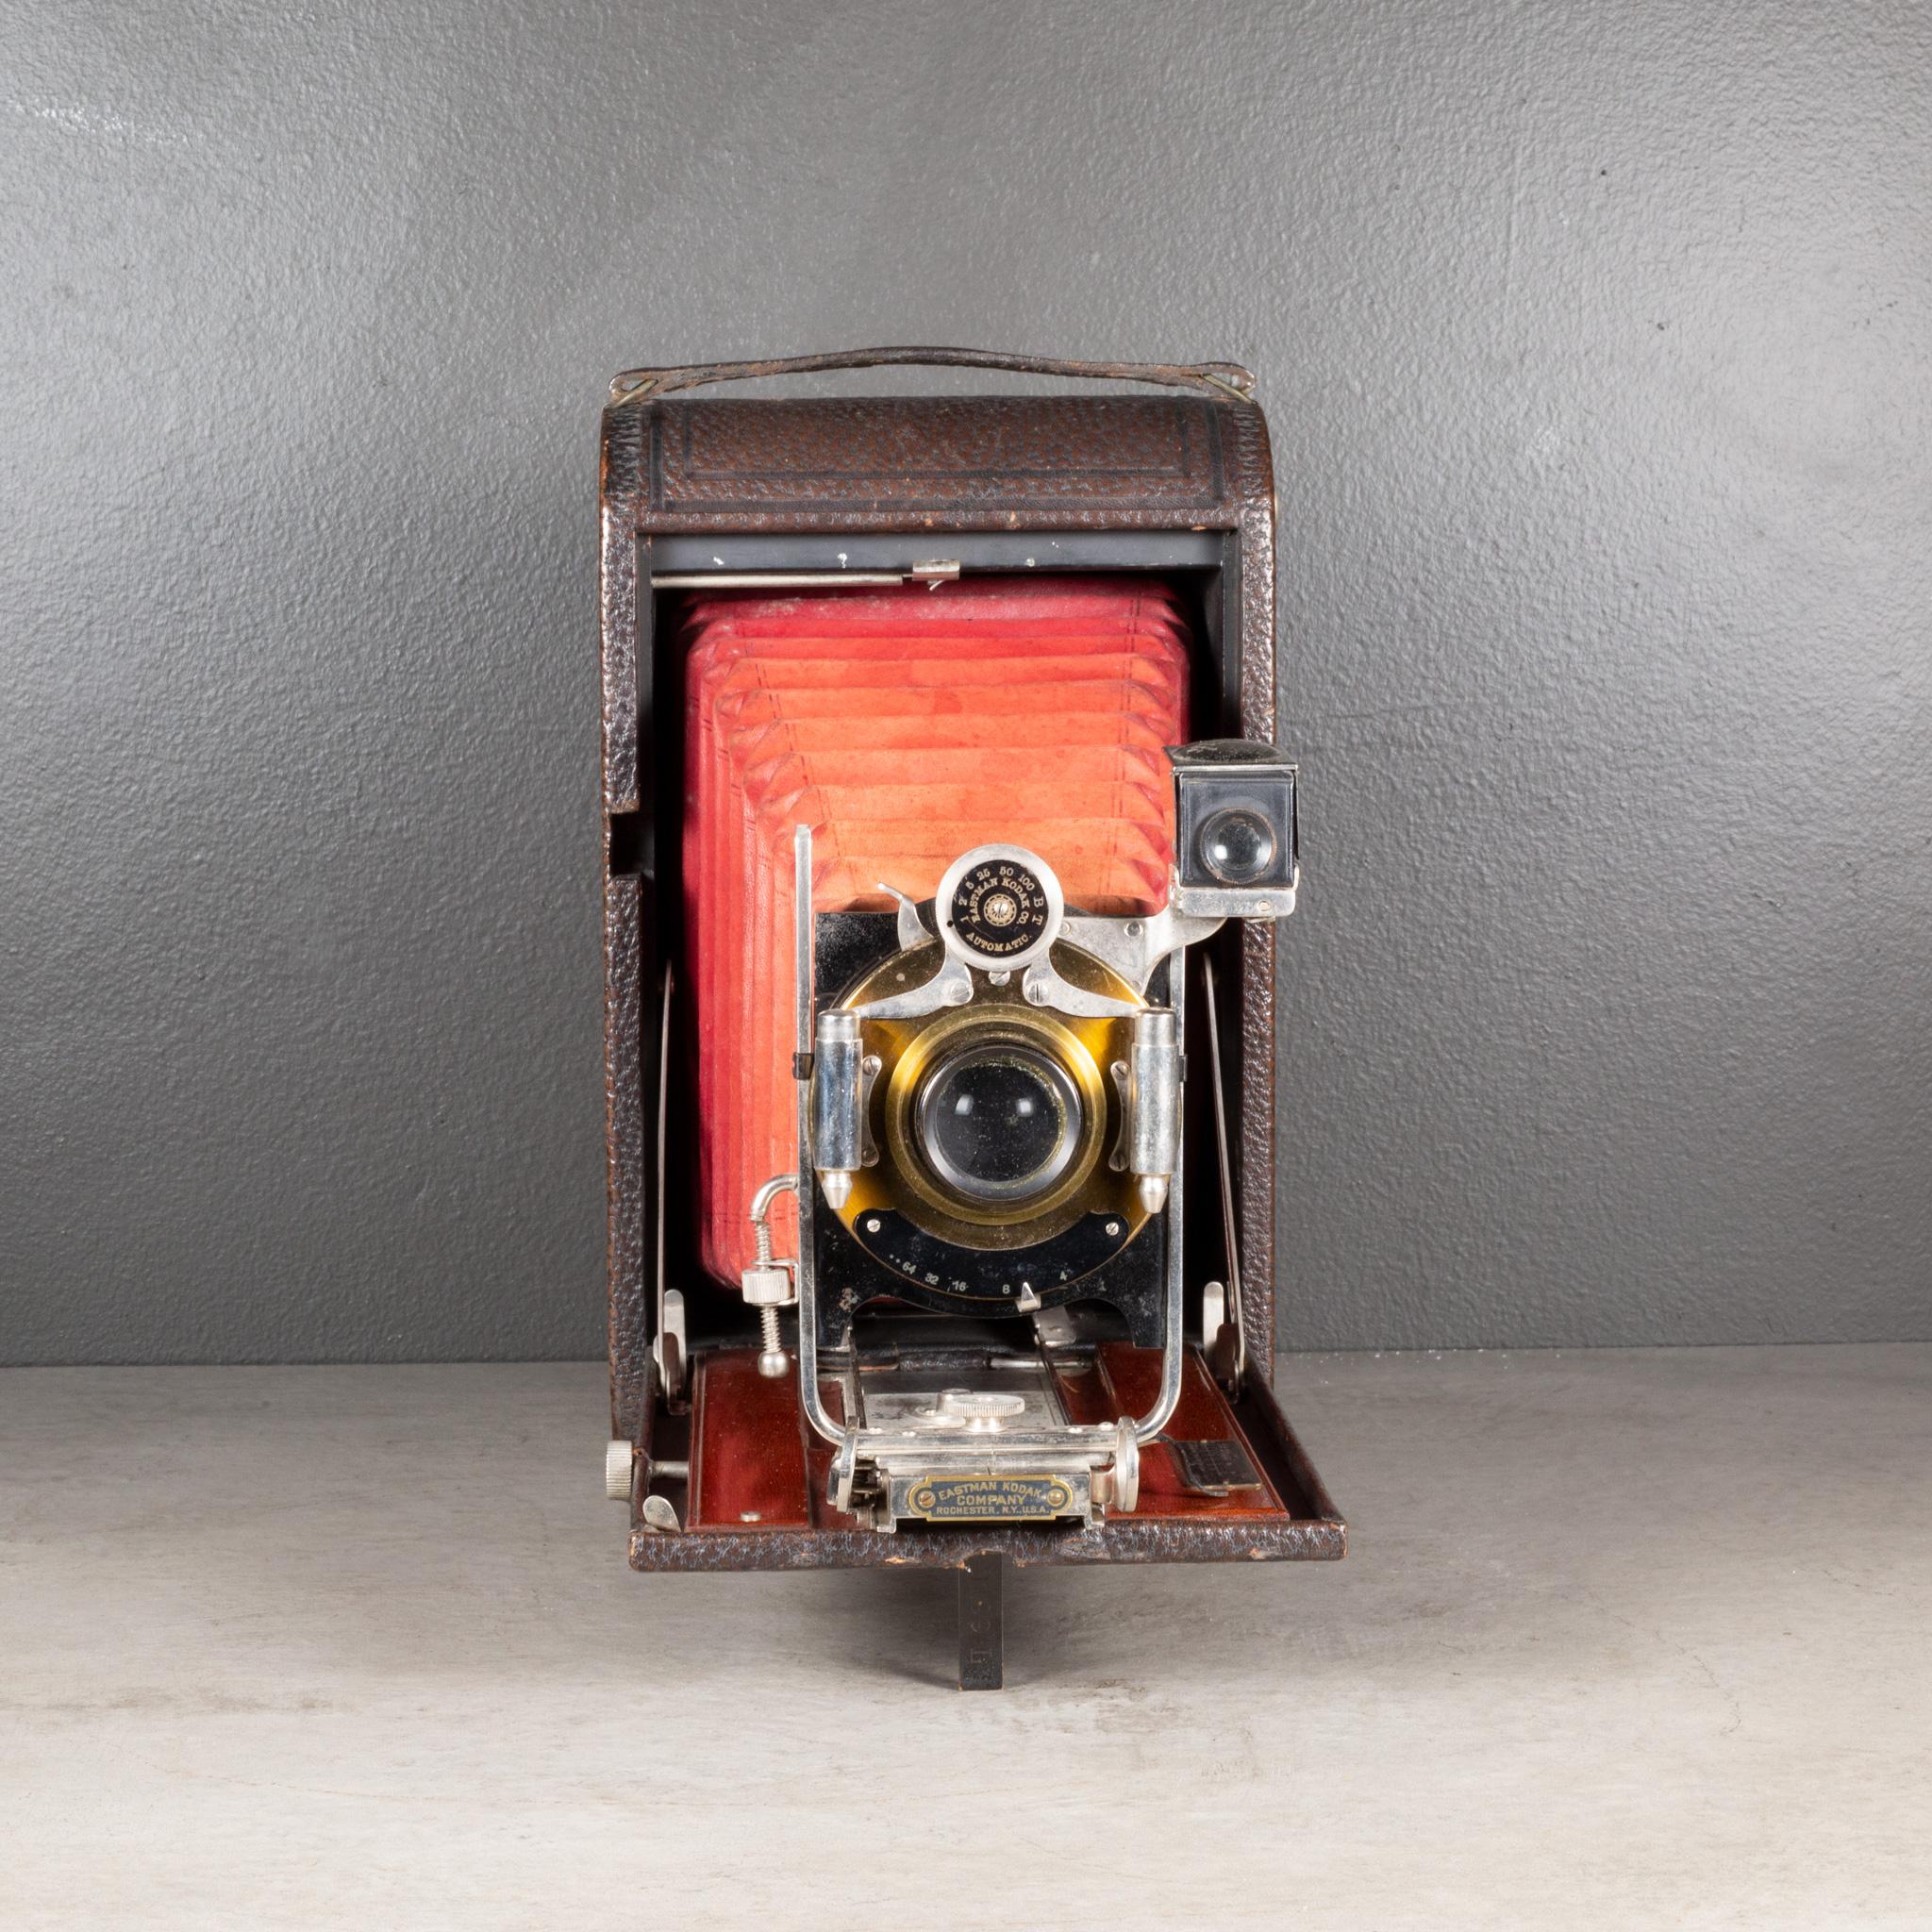 À PROPOS DE

Un grand appareil photo pliant Eastman Kodak No. 3A avec soufflet rouge et incrustation en acajou. La carrosserie est recouverte de cuir avec des touches de chrome et de laiton. L'appareil photo se plie pour atteindre 2,5 pouces. Cette